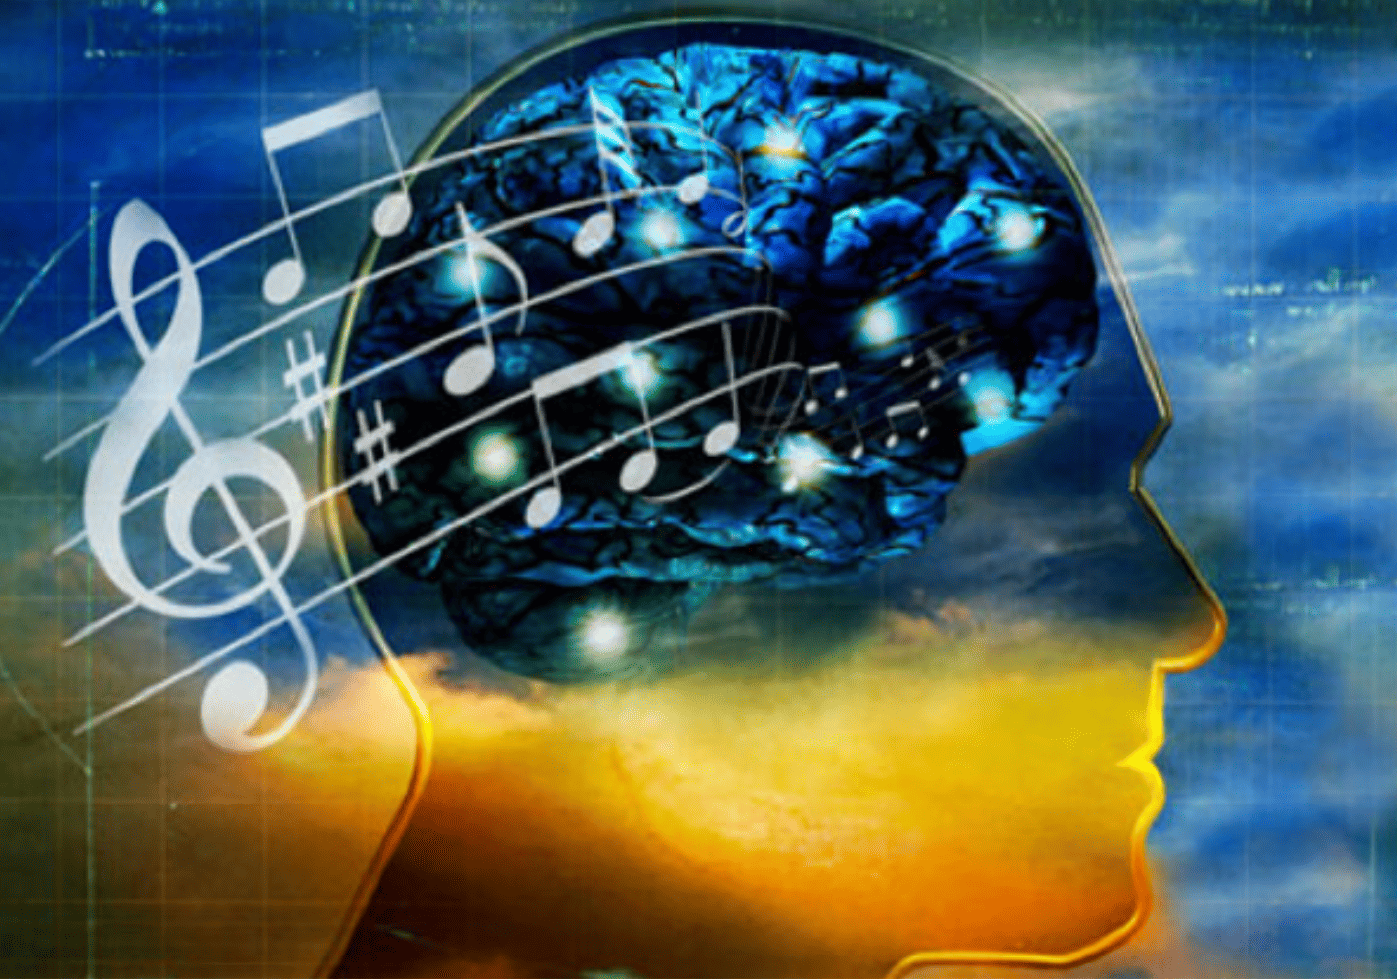 Музыка для улучшения мозга